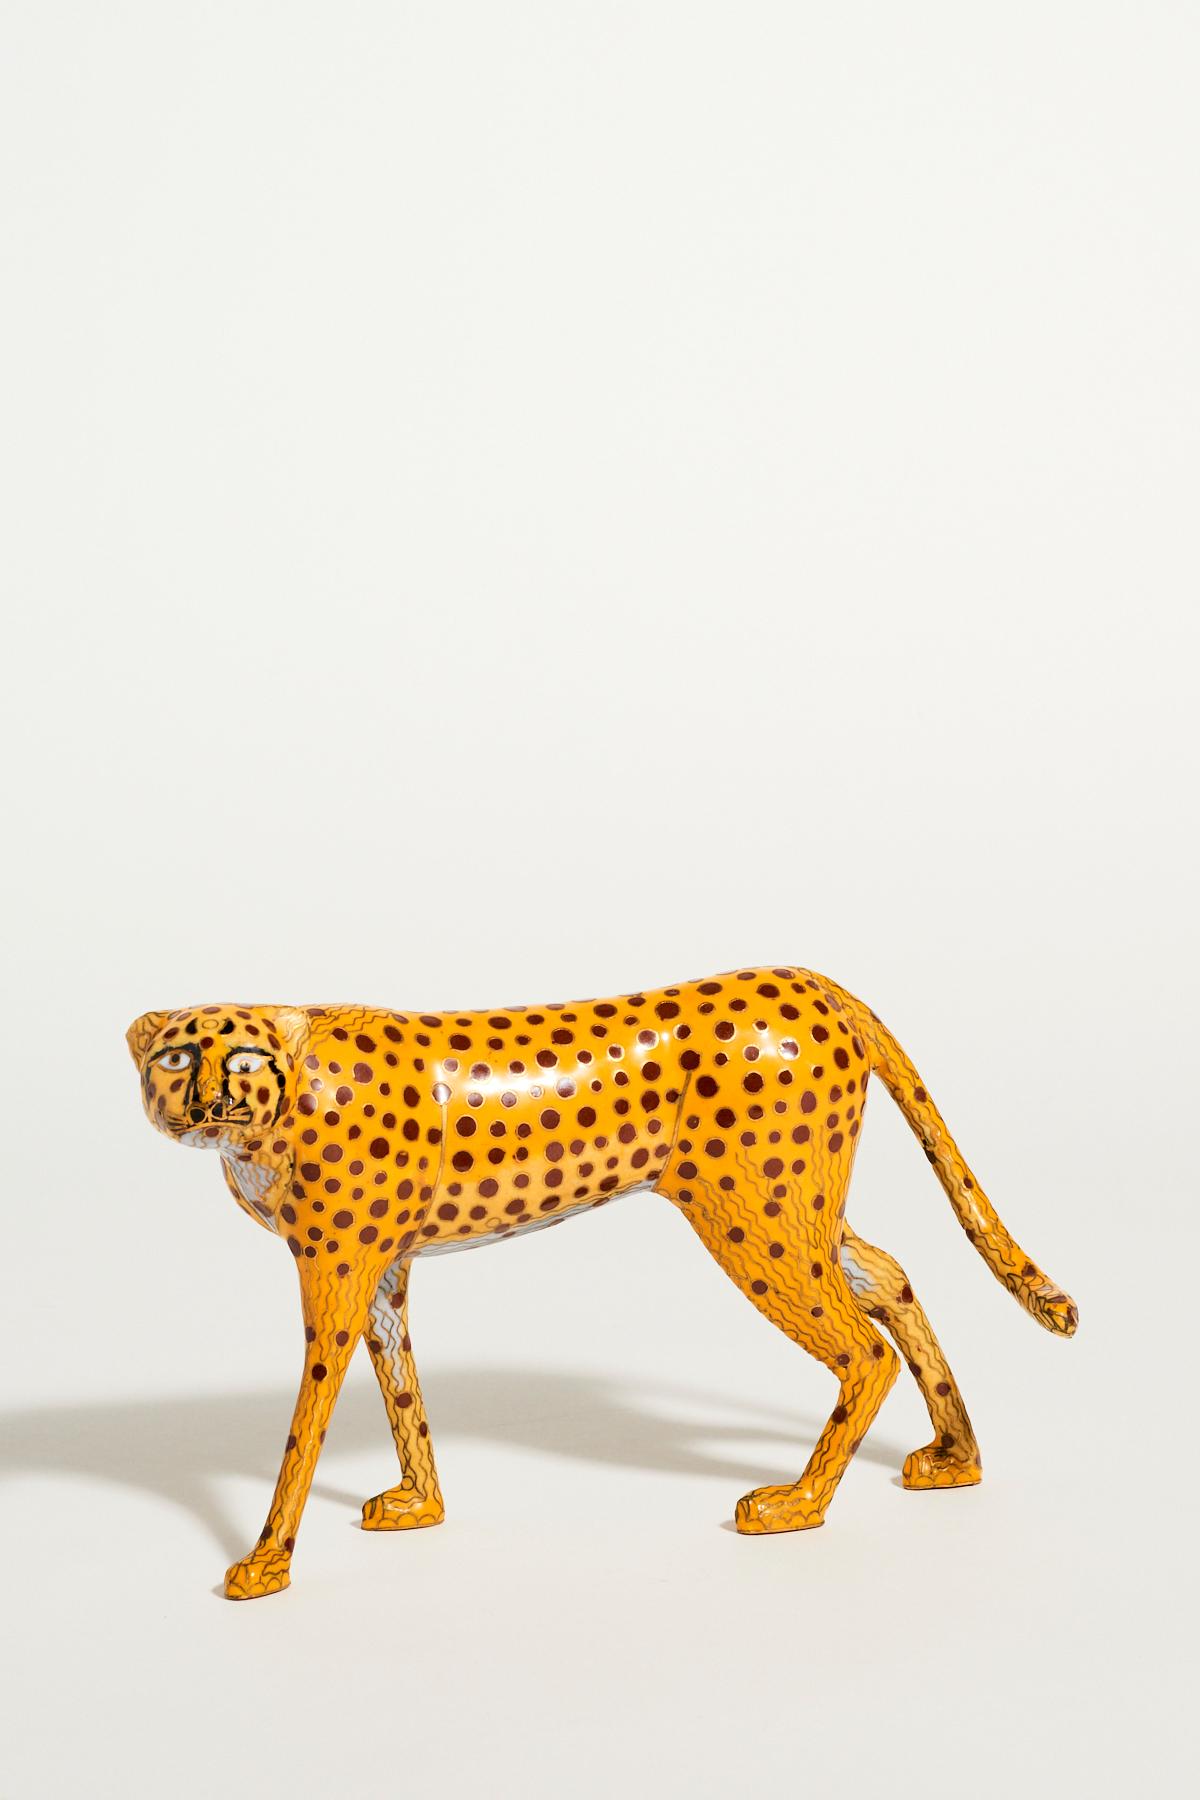 Cloisonné Cheetah 1